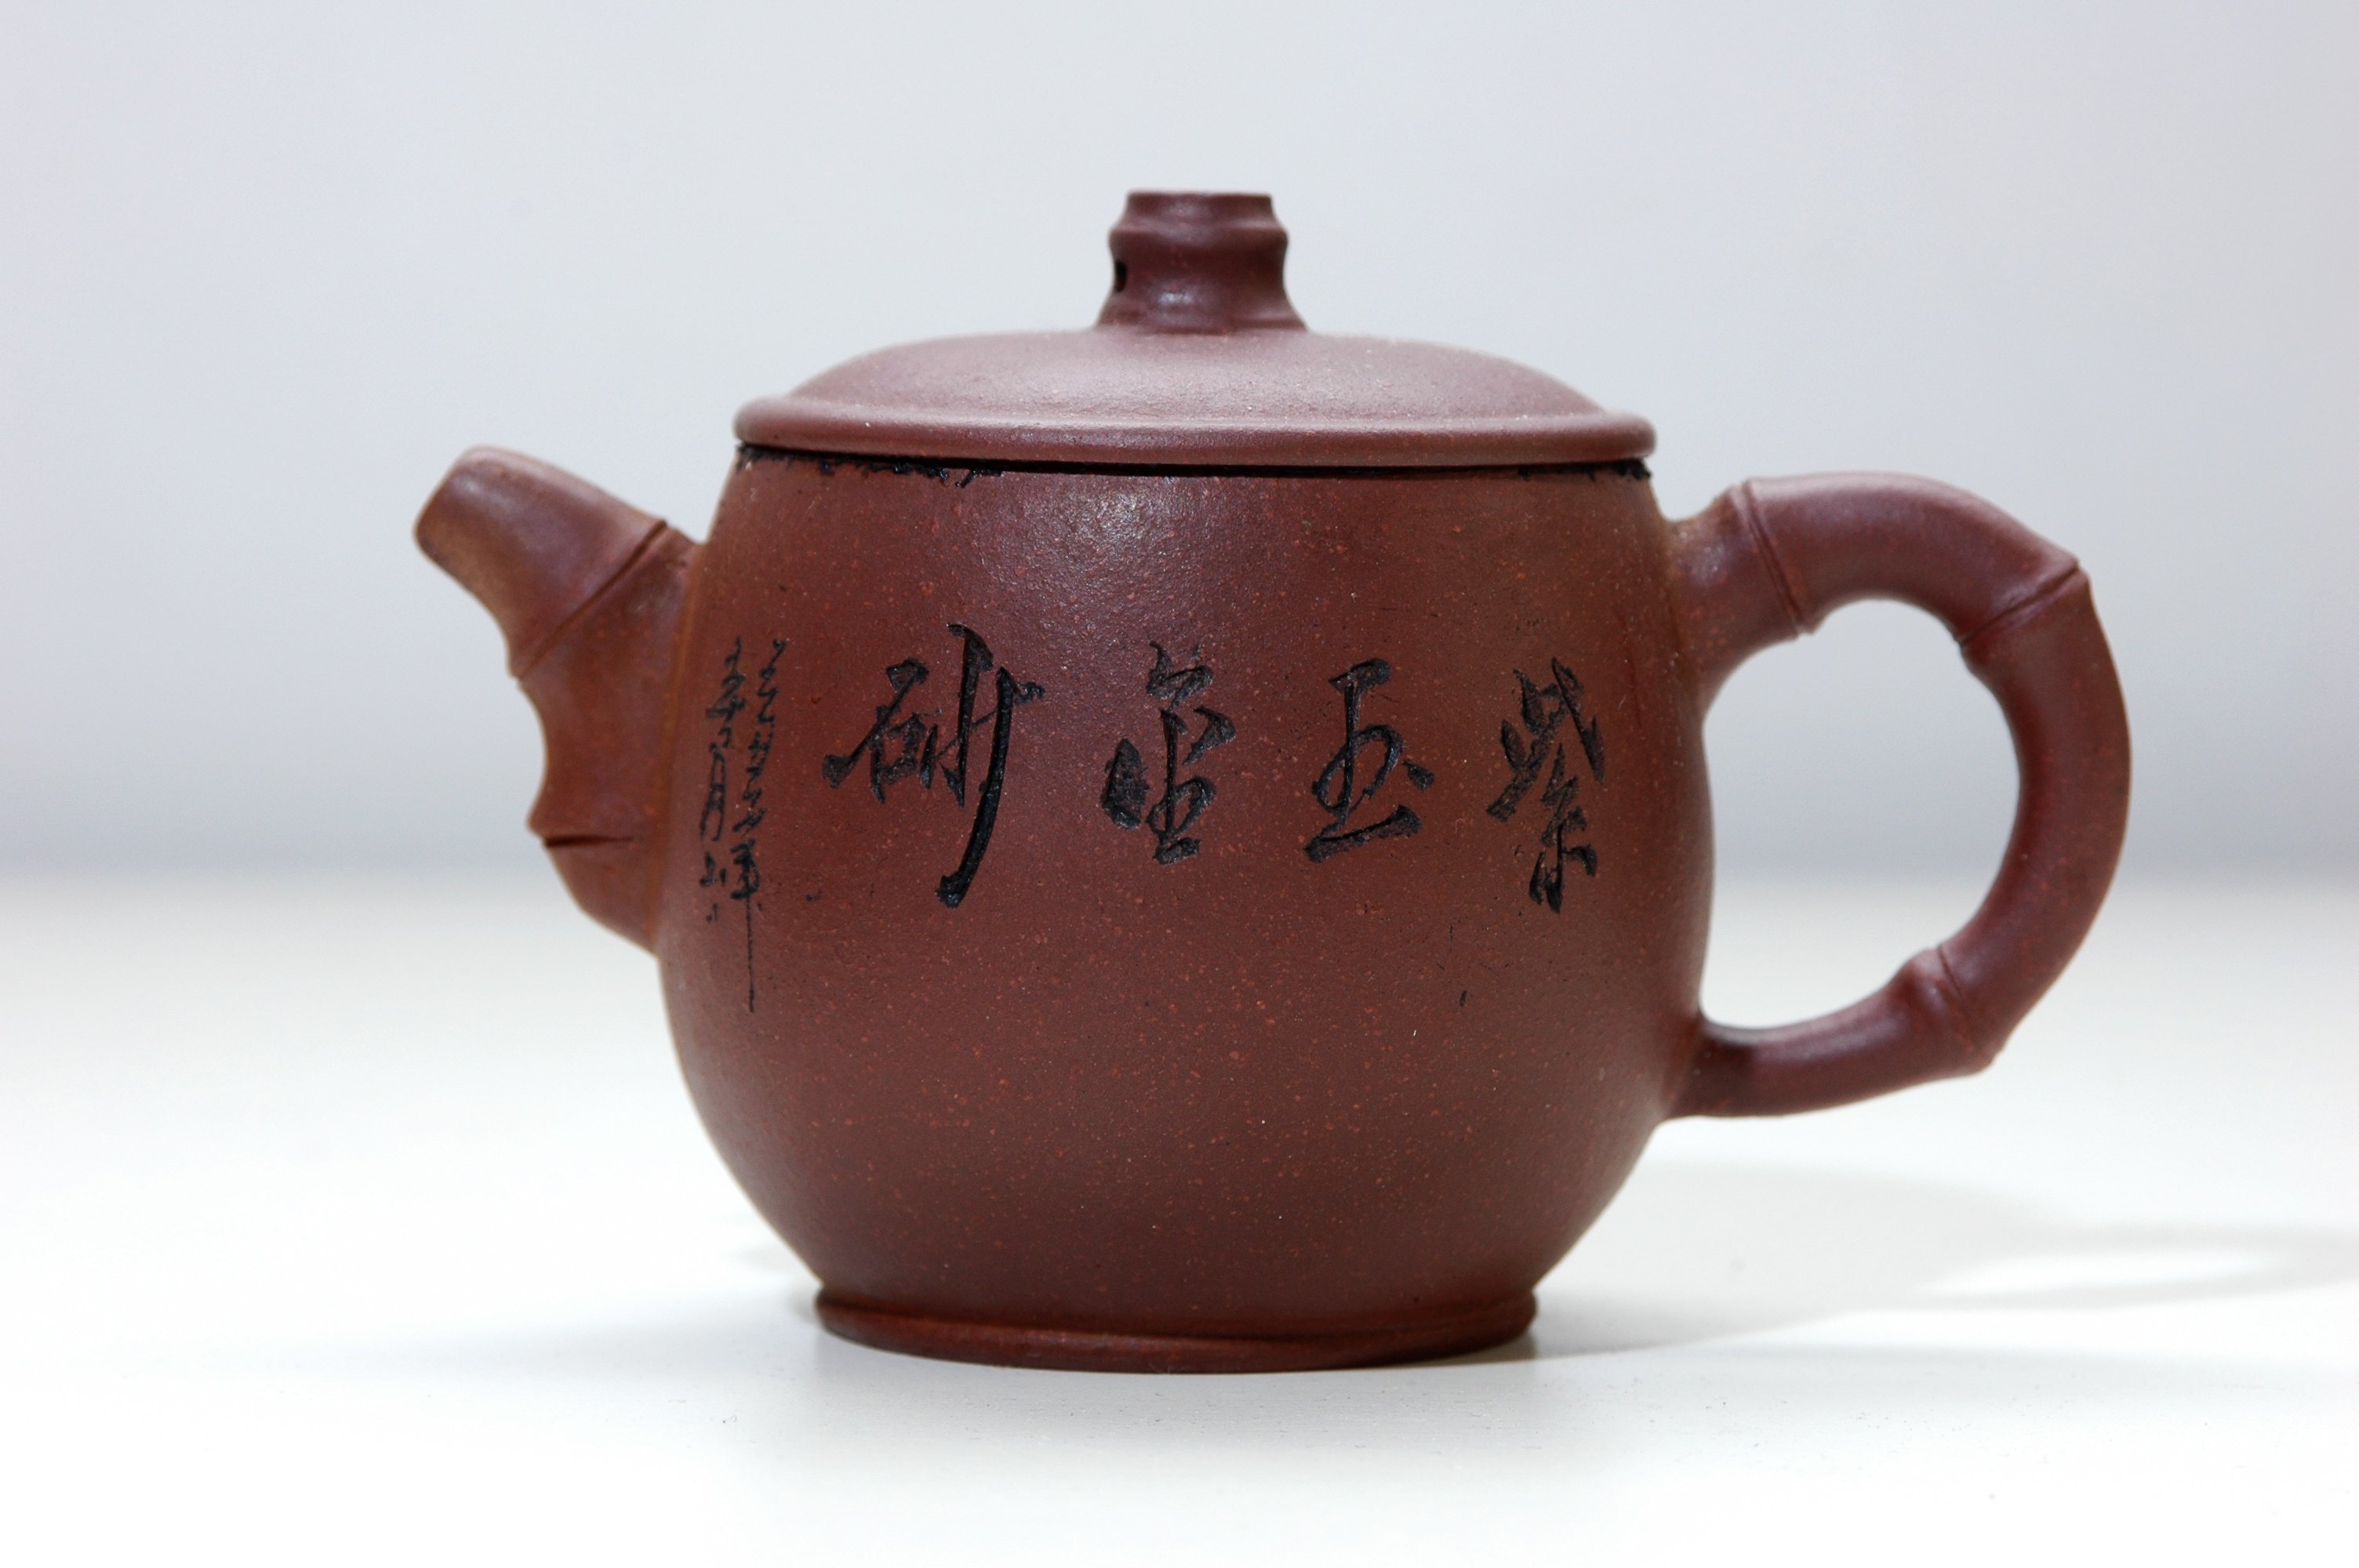 brown ceramic teapot